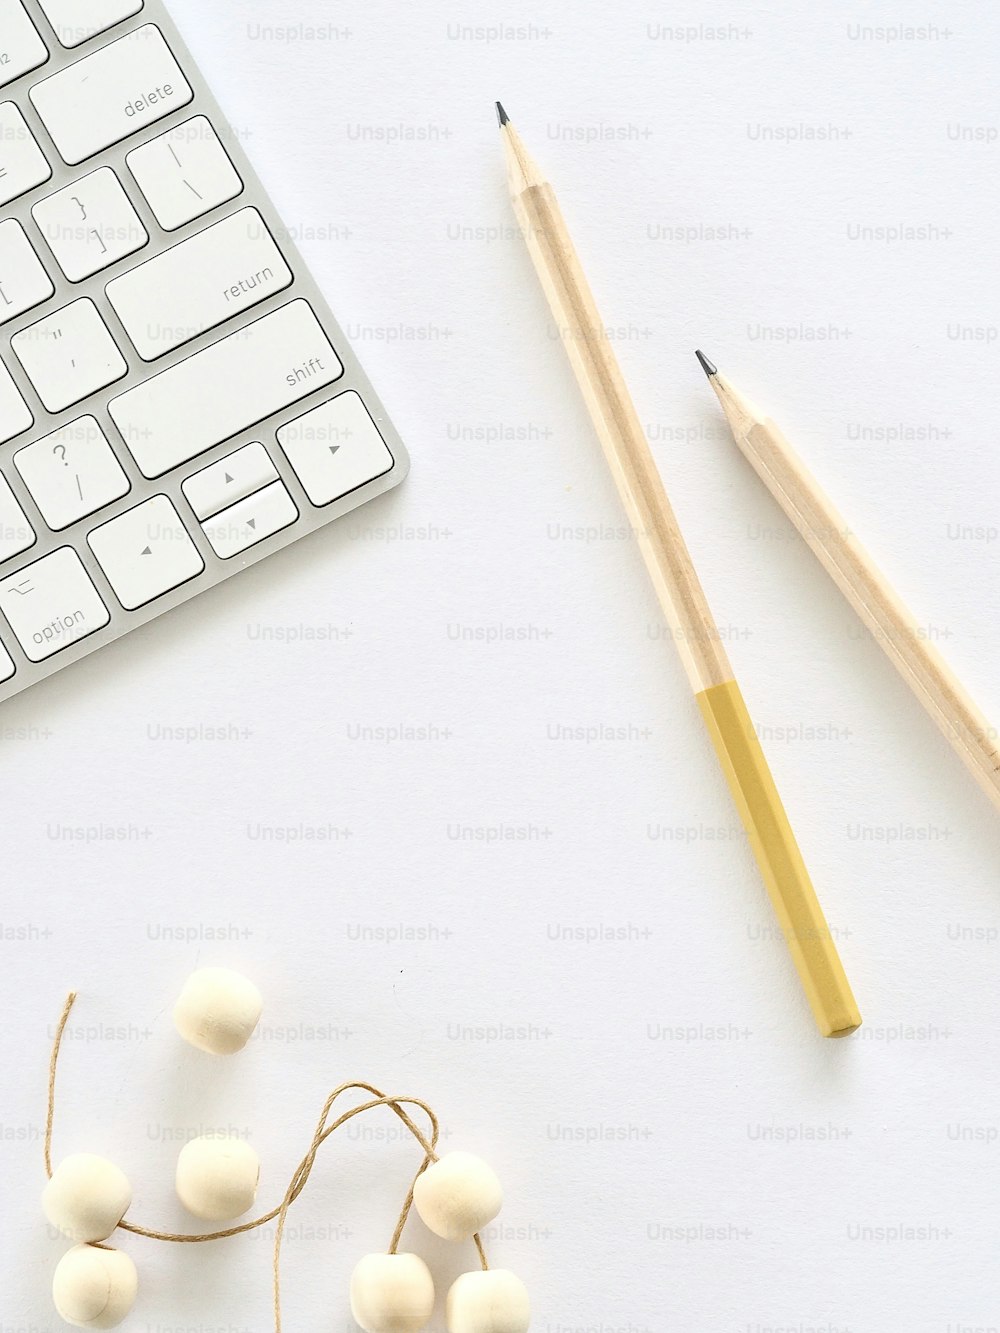 책상 위에 있는 키보드, 연필, 면봉 몇 개